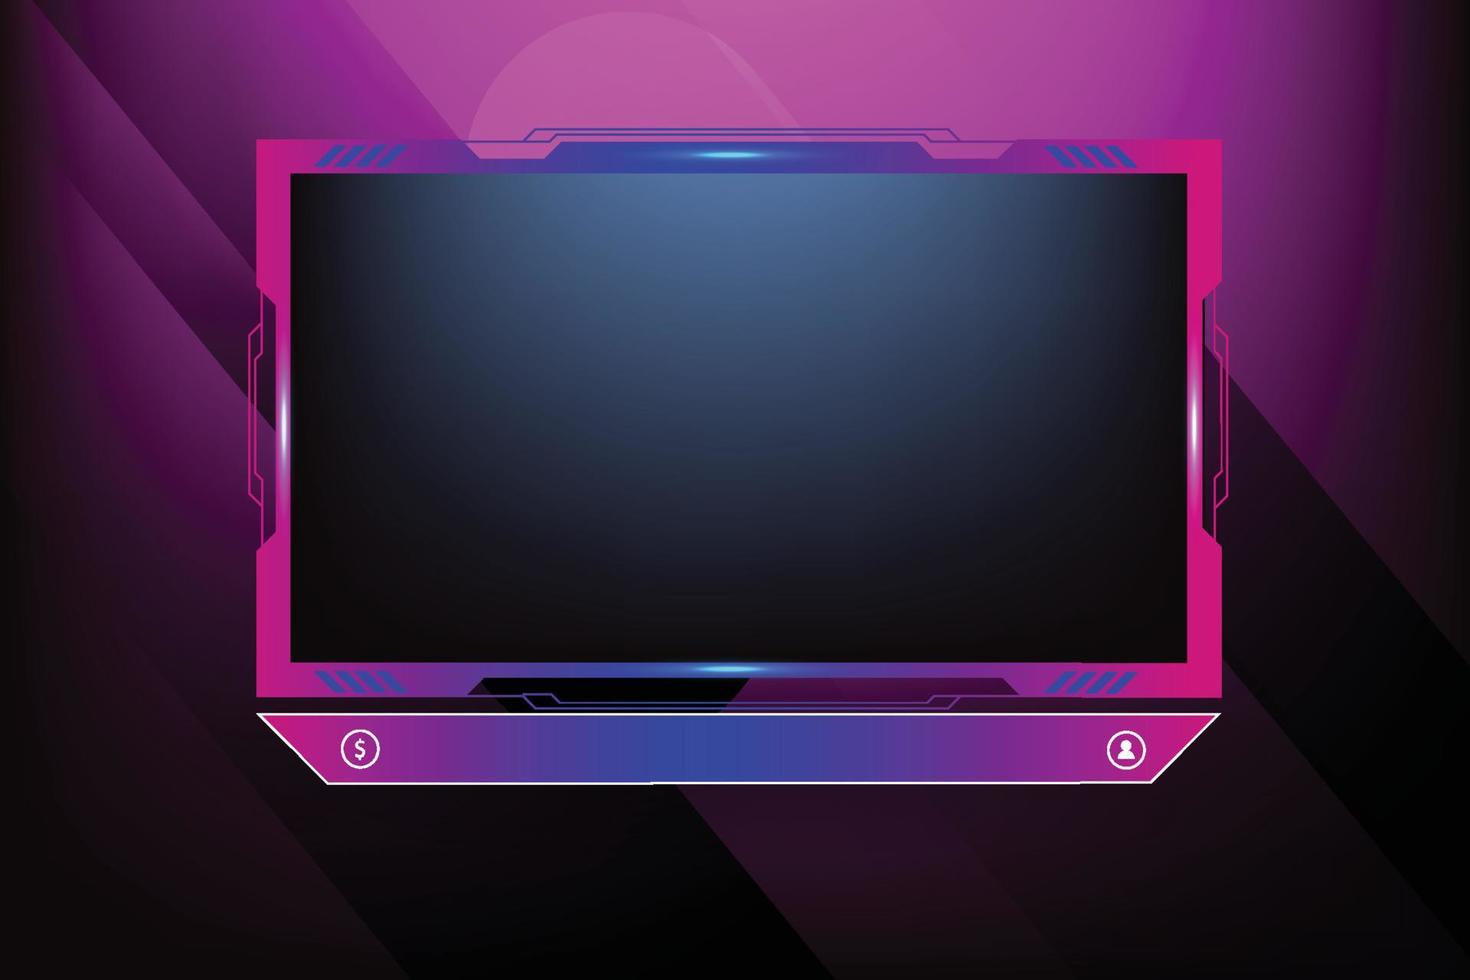 décoration de superposition de diffusion en direct avec une nuance de couleur rose et bleu girly. panneau d'écran de jeu en ligne et conception de bordure pour les joueurs. vecteur d'éléments de diffusion en direct avec des boutons colorés.